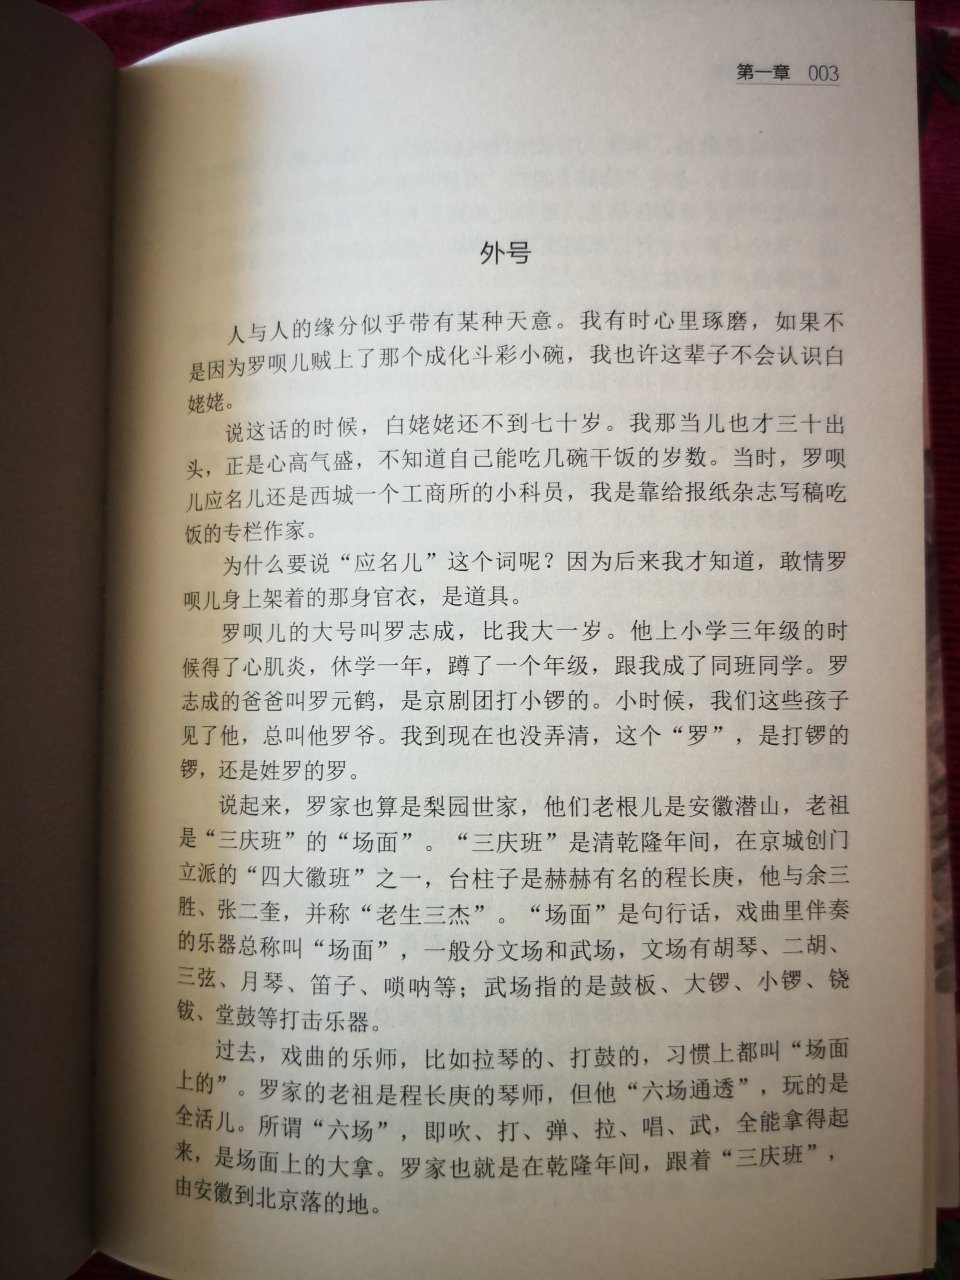 喜欢刘一达的小说，京味儿十足，勾起了许多儿时的回忆。